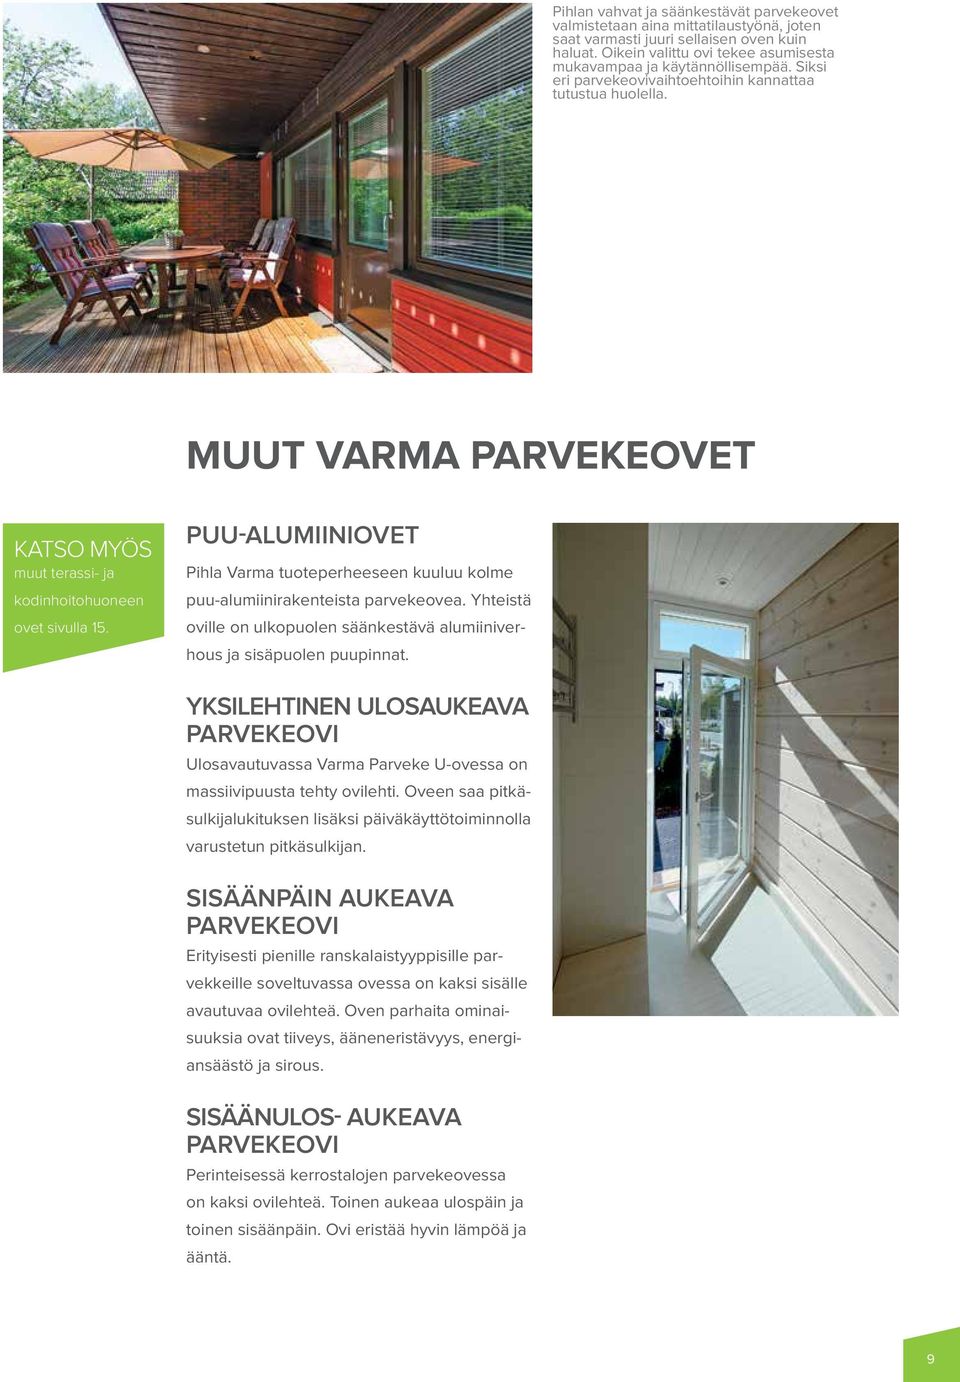 PUU-ALUMIINIOVET Pihla Varma tuoteperheeseen kuuluu kolme puu-alumiinirakenteista parvekeovea. Yhteistä oville on ulkopuolen säänkestävä alumiiniverhous ja sisäpuolen puupinnat.